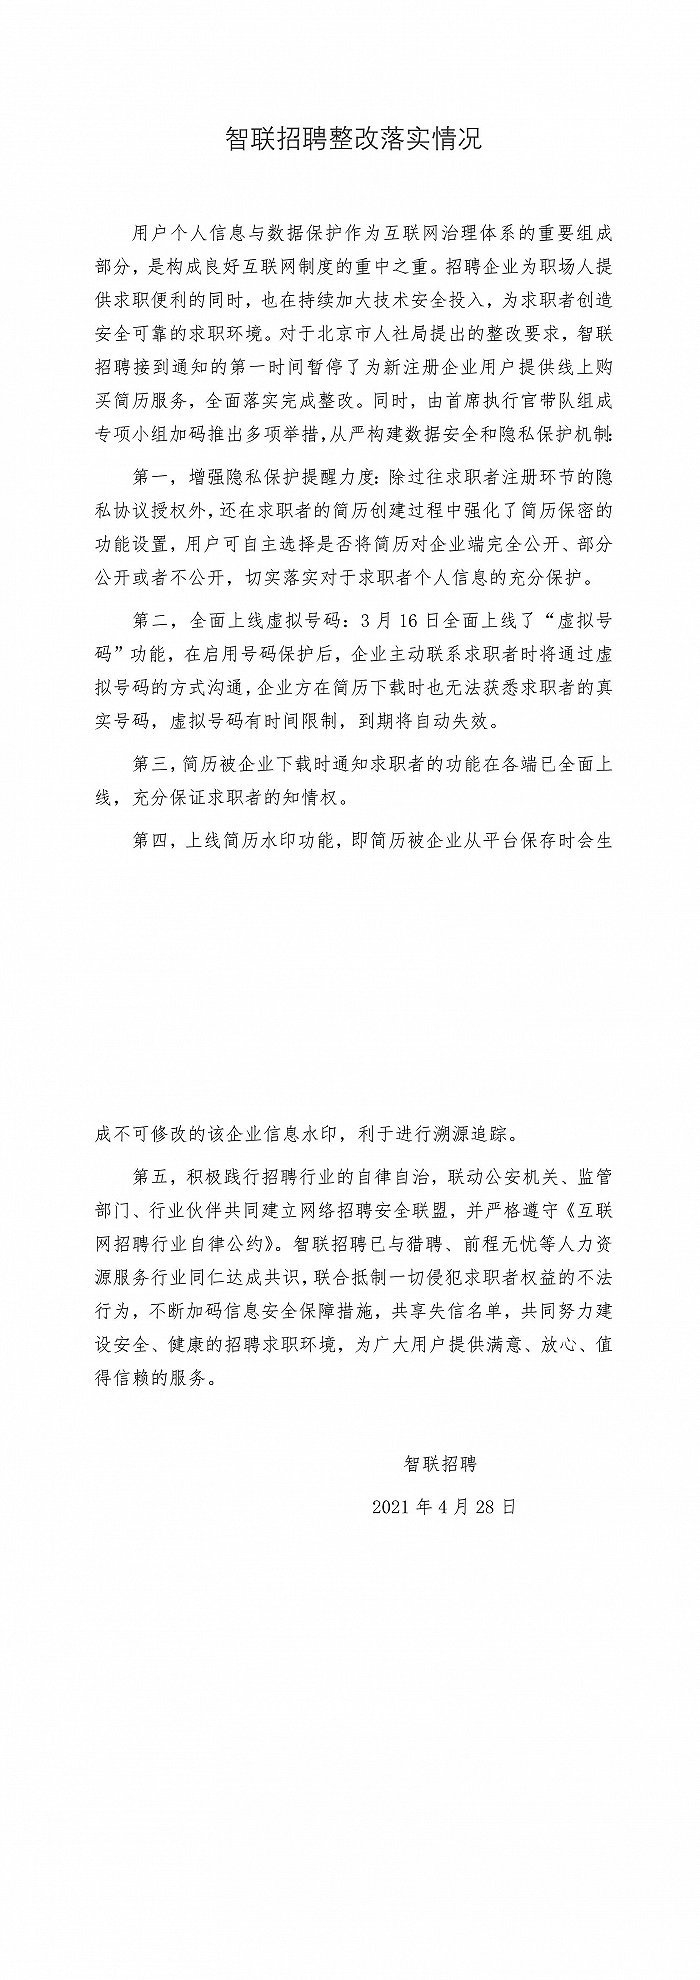 北京人社局公布智联招聘、猎聘整改情况 此前因泄露用户个人简历被约谈